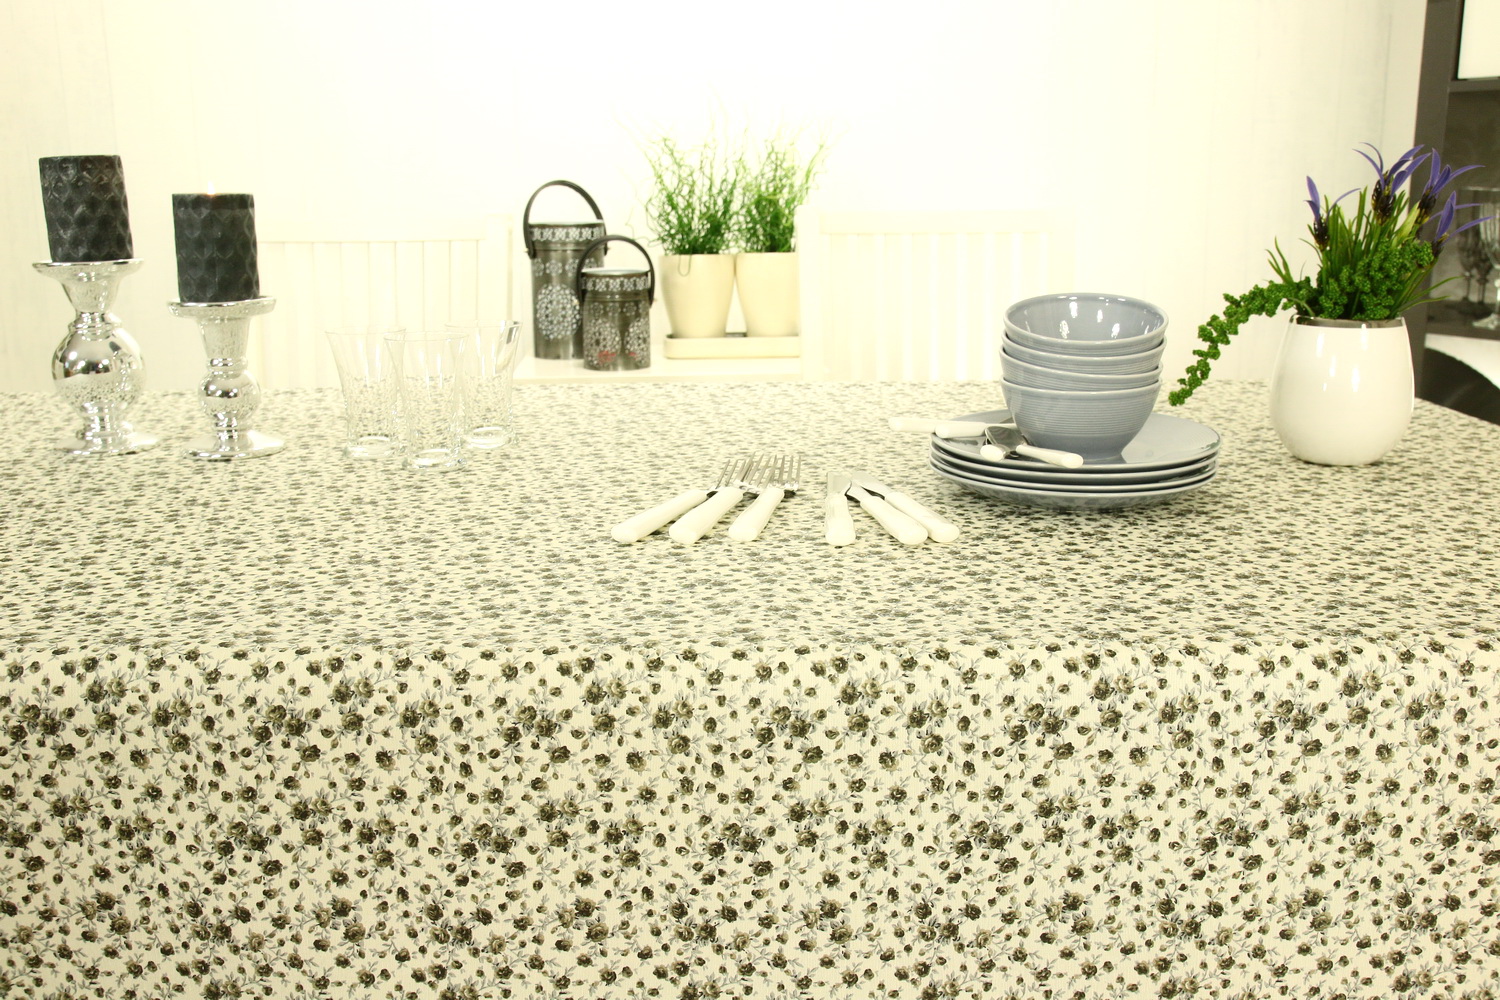 Tischdecke abwaschbar Grau Weiß kleine Blümchen Breite 130 cm